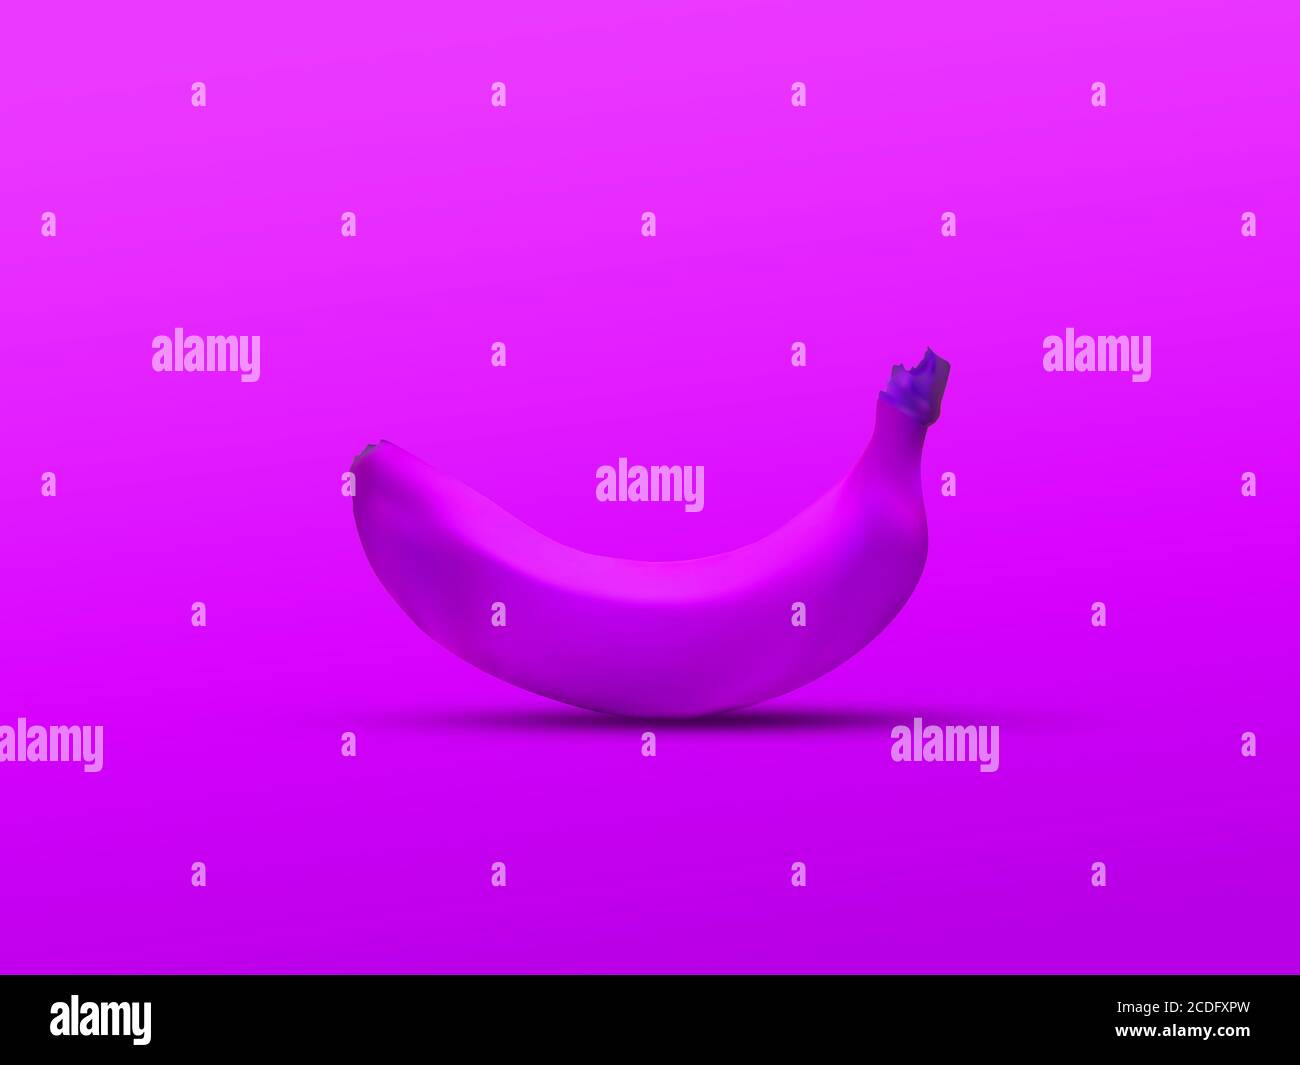 banane de couleur unique isolée sur fond violet : studio de couleur claire une banane, visualisation 3d Banque D'Images